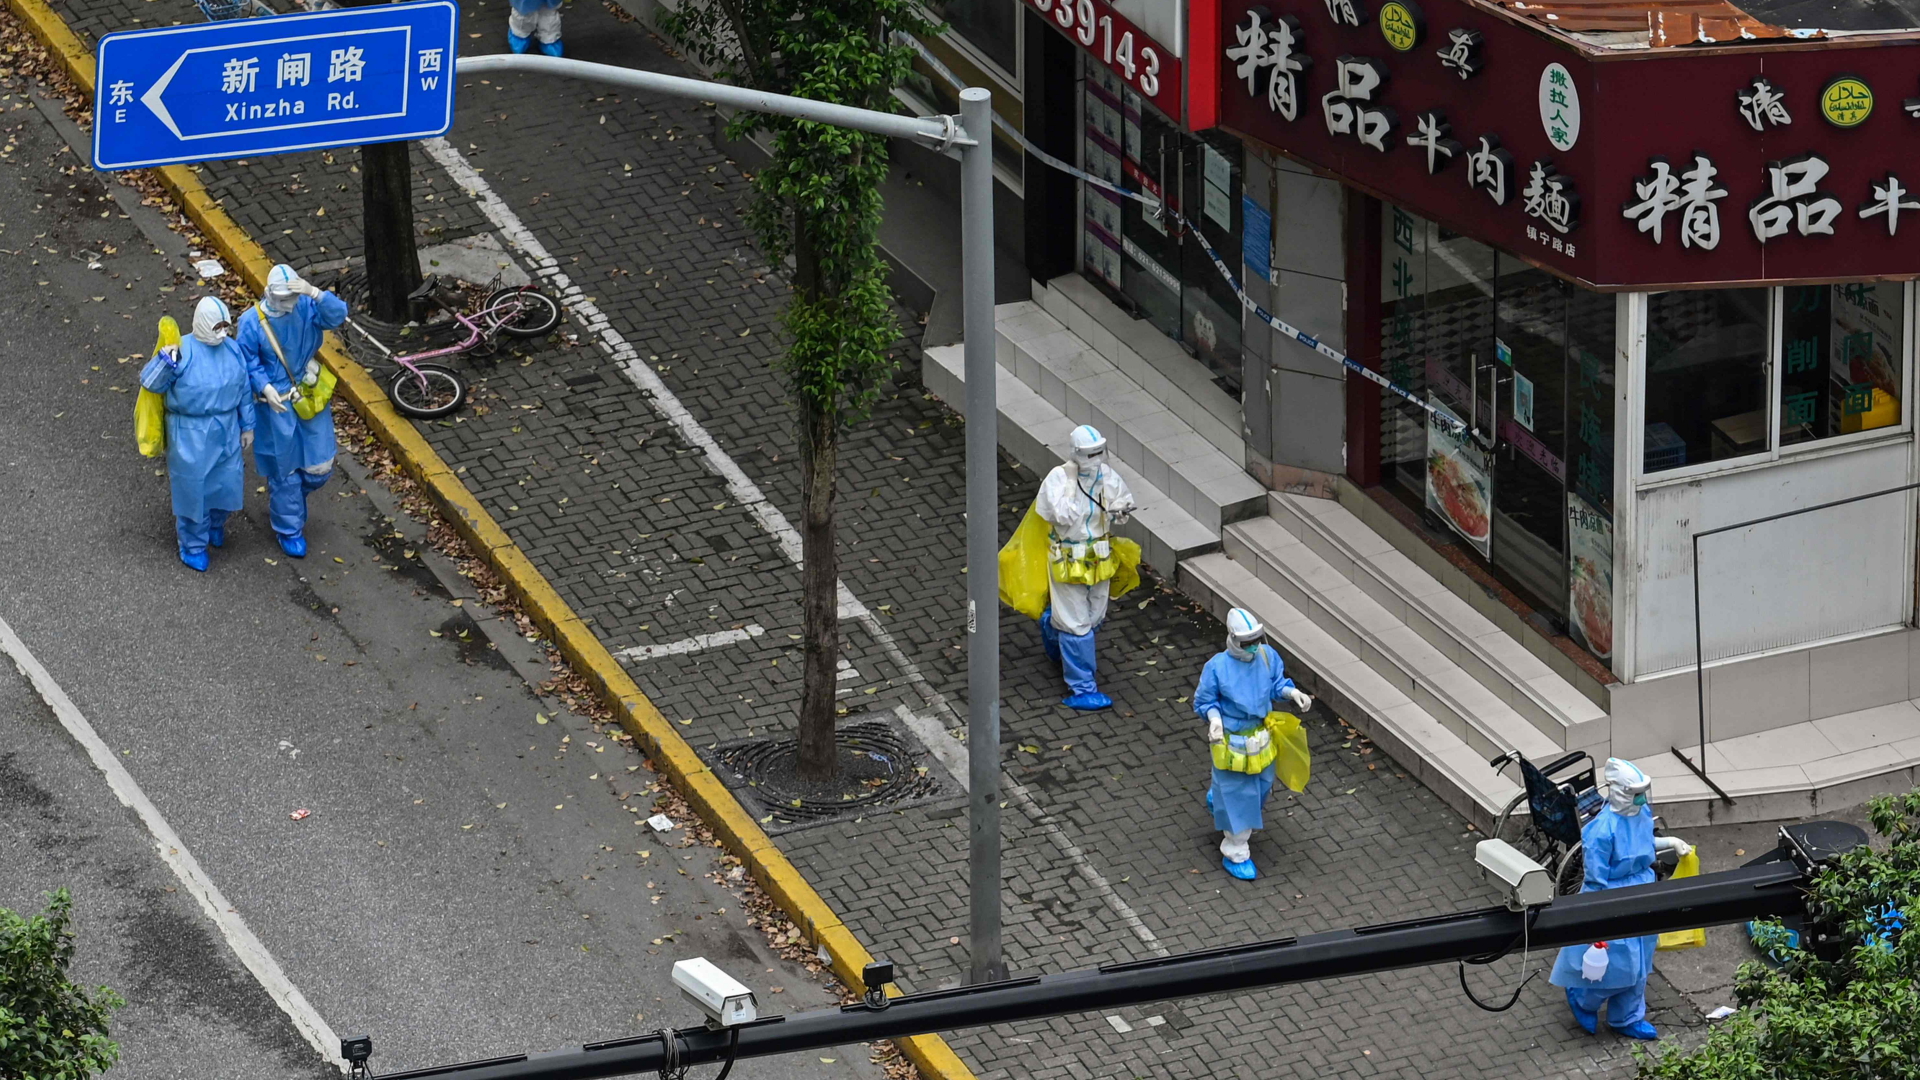 Mitarbeiter der Gesundheitsdienste in Schutzanzügen auf einer Straße in Shanghai